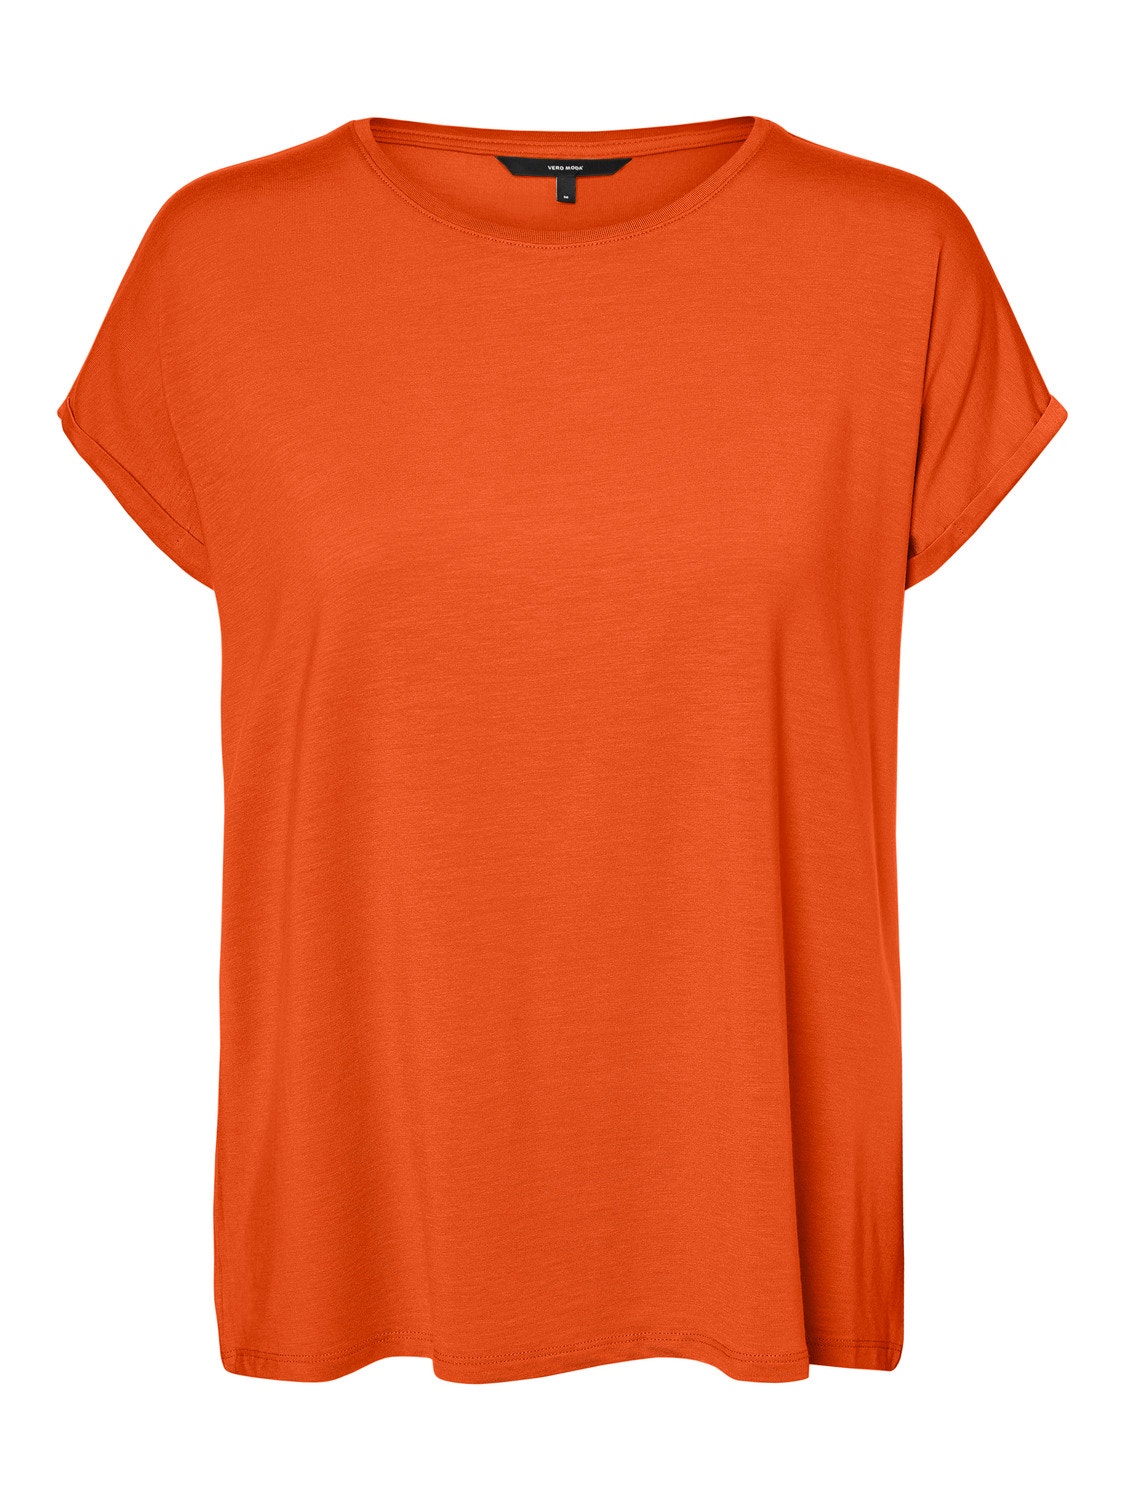 Vero Moda VMAVA T-Shirt -Scarlet Ibis - 10284468